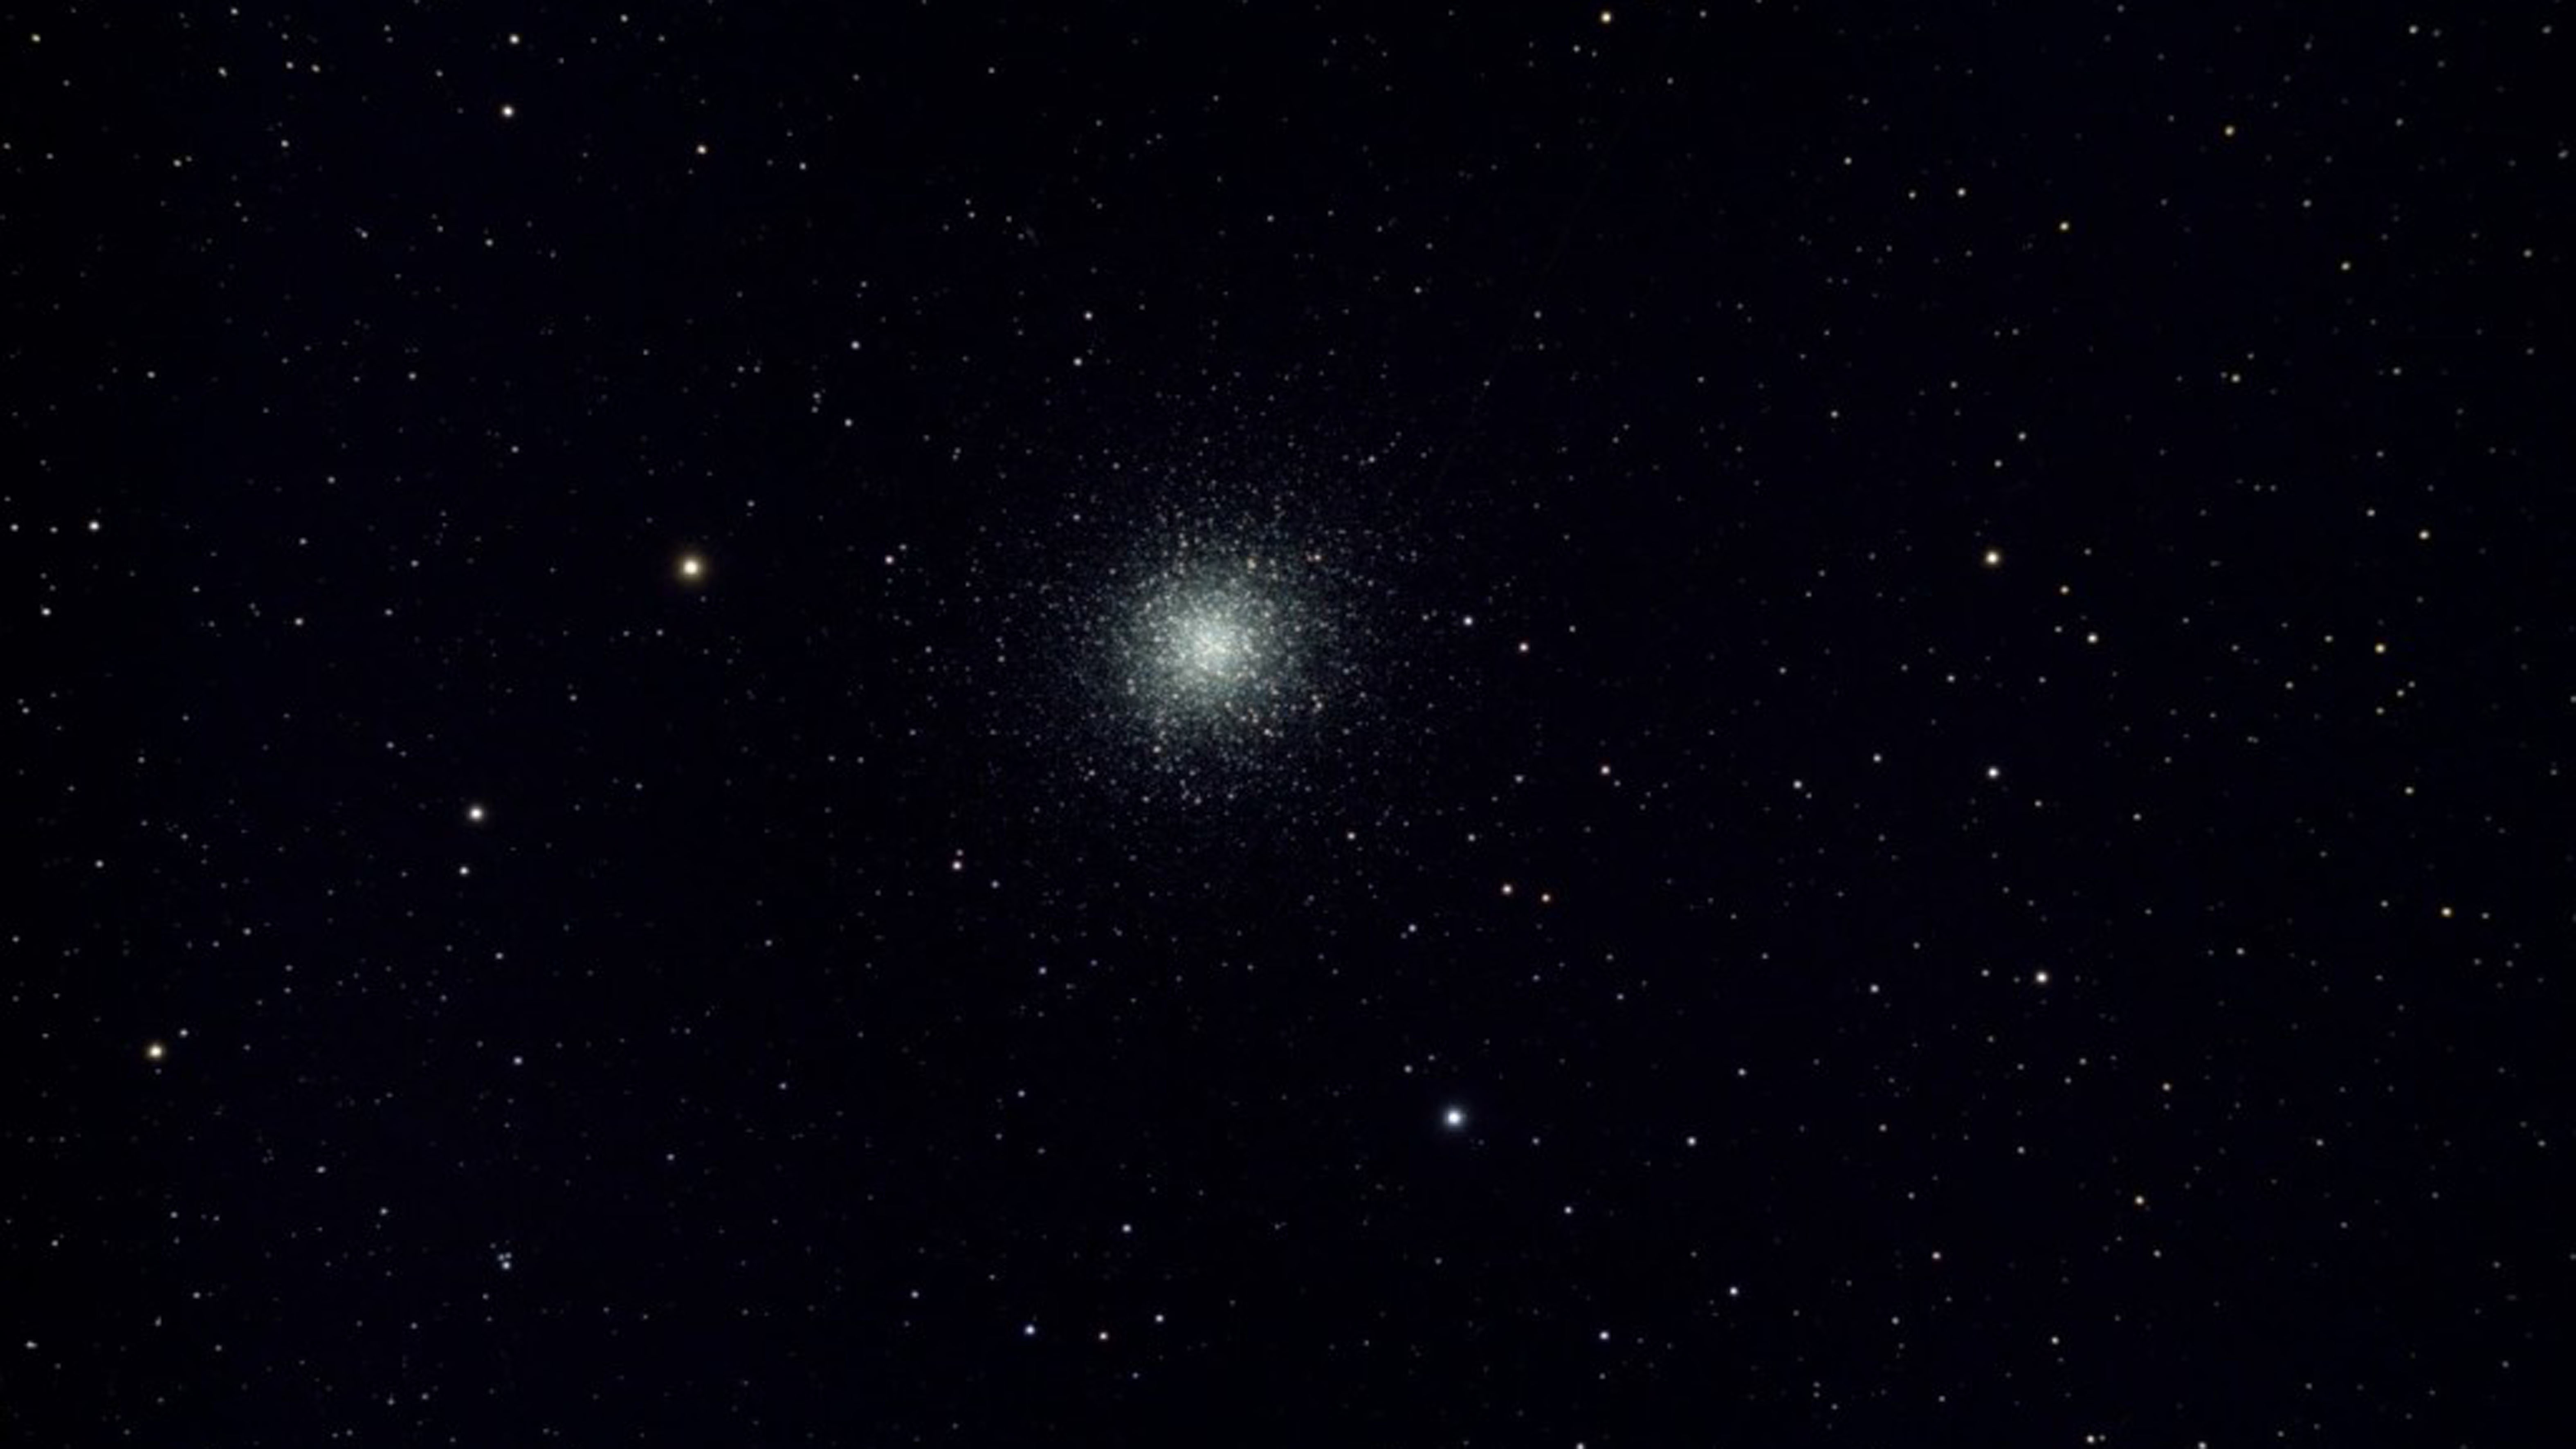 Ammasso globulare M13 ripreso con uno Skywatcher AP 120/900 EvoStar ED DS-Pro e una Canon EOS 700Da, autore dell'immagine: Stefan Taube.